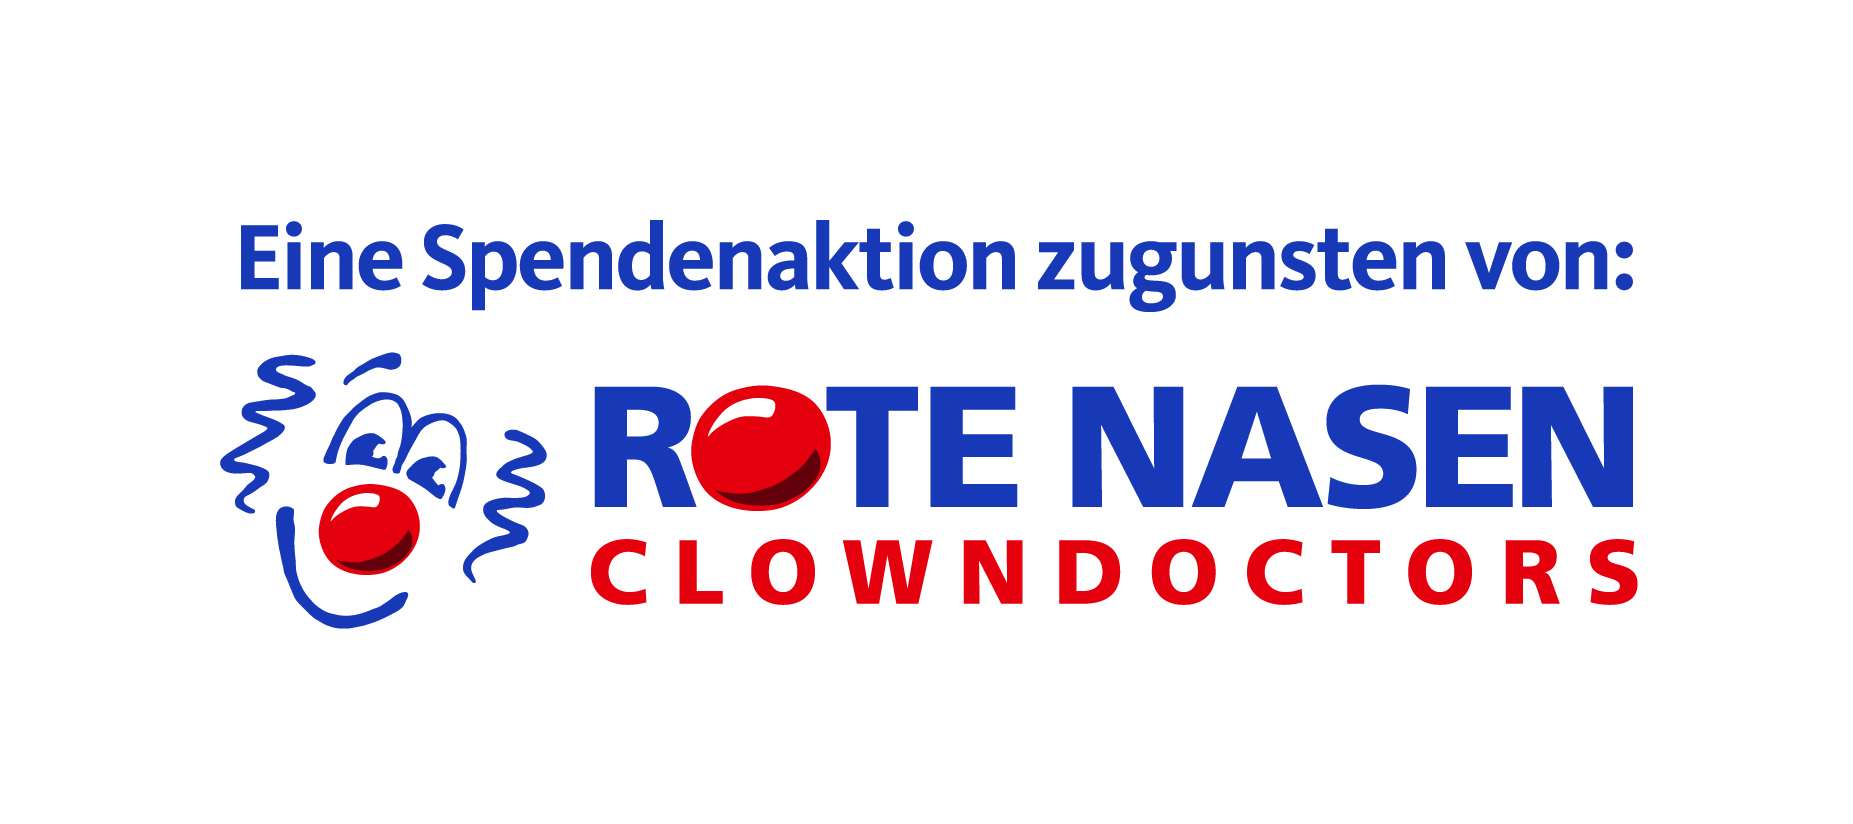 Spendenaktion für die "Rote Nasen" Clowndoktoren--Bild-Nr. 2